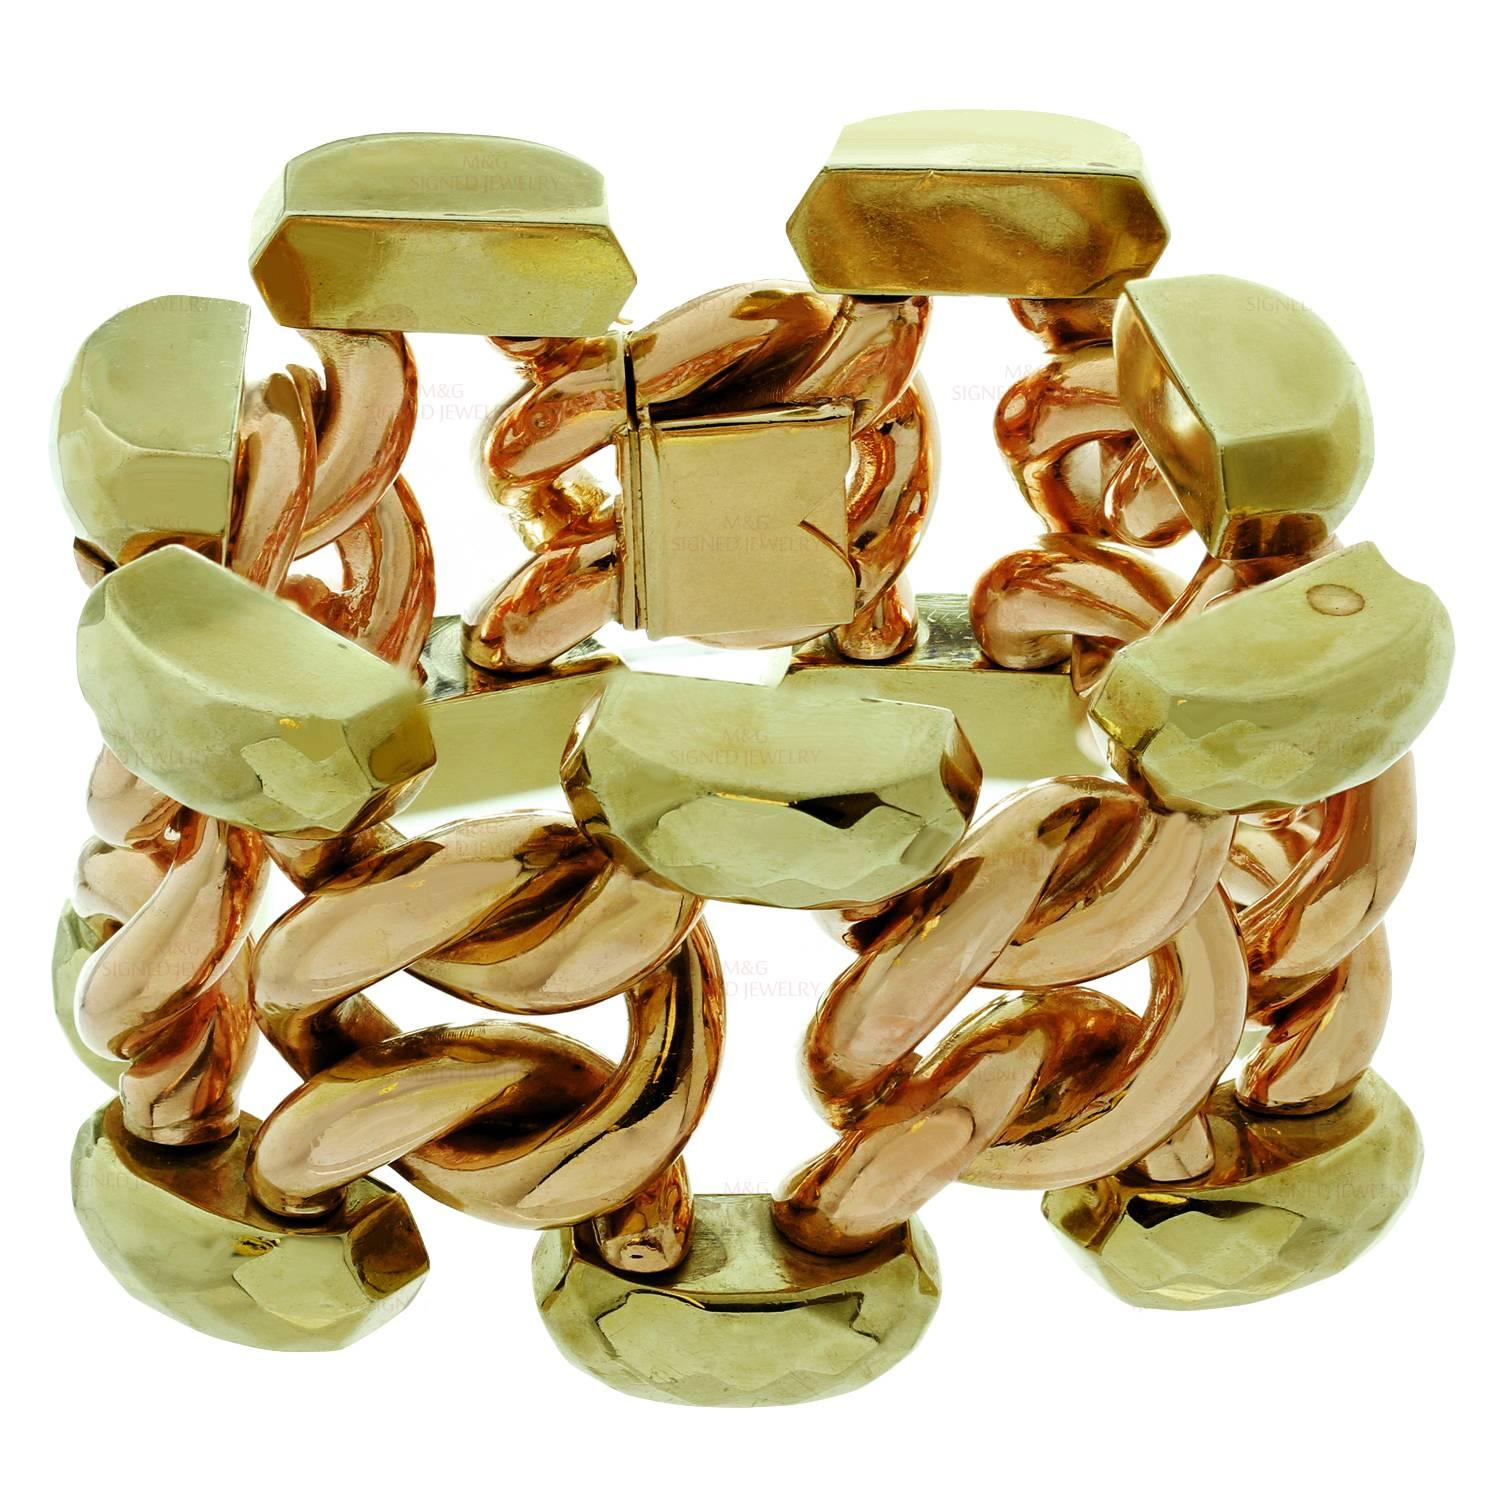 Ce magnifique bracelet à gros maillons rétro est réalisé en or jaune et rose 18 carats. Fabriqué aux États-Unis vers les années 1940. Poids total de l'or 106gr. Nous ne polissons pas les objets antiques, mais nous pouvons ajouter un haut degré de